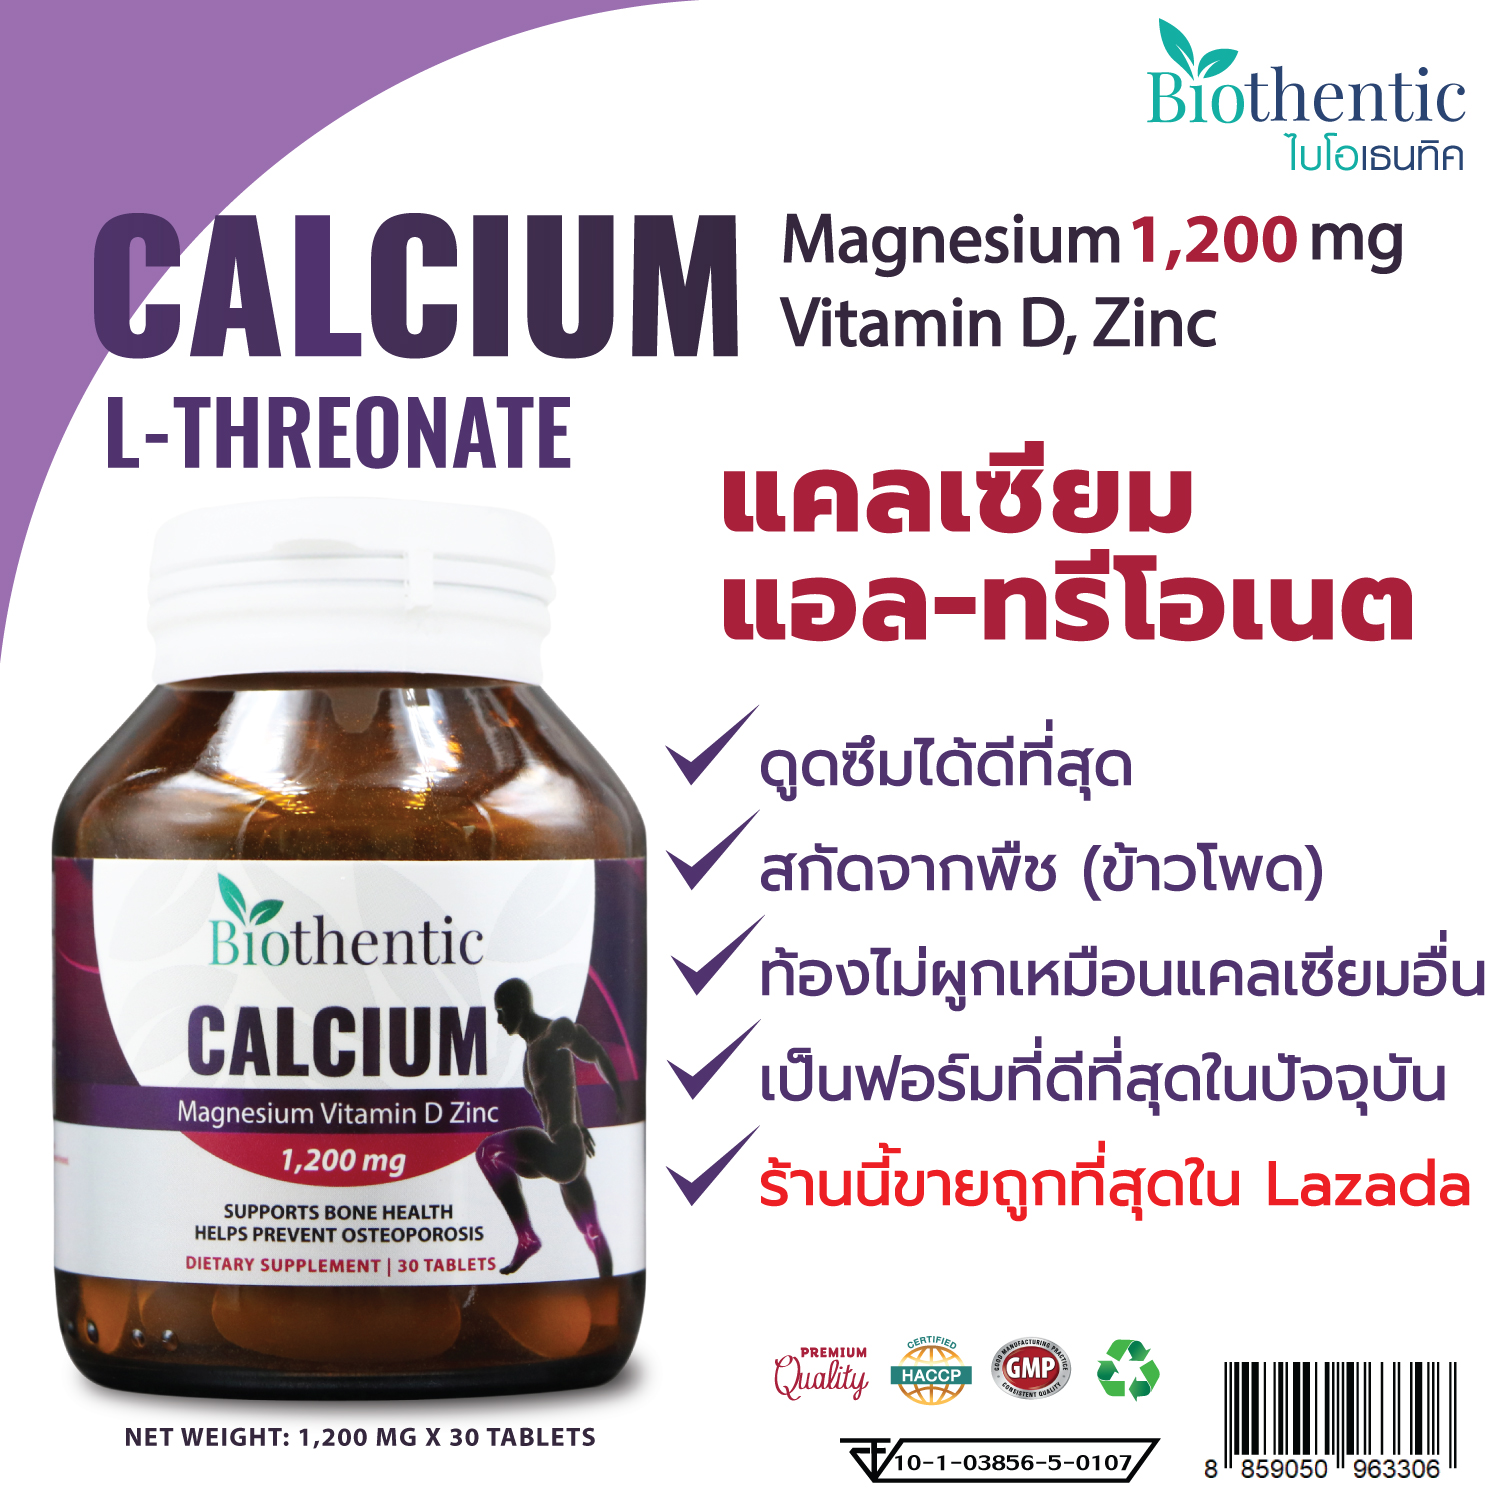 แคลเซียม แอลทรีโอเนต พลัส แมกนีเซียม วิตามินดี ซิงค์ x 1 ขวด ไบโอเธนทิค Calcium L-Threonate Plus Magnesium Vitamin D Zinc Biothentic แคลเซียม แอล-ทรีโอเนต